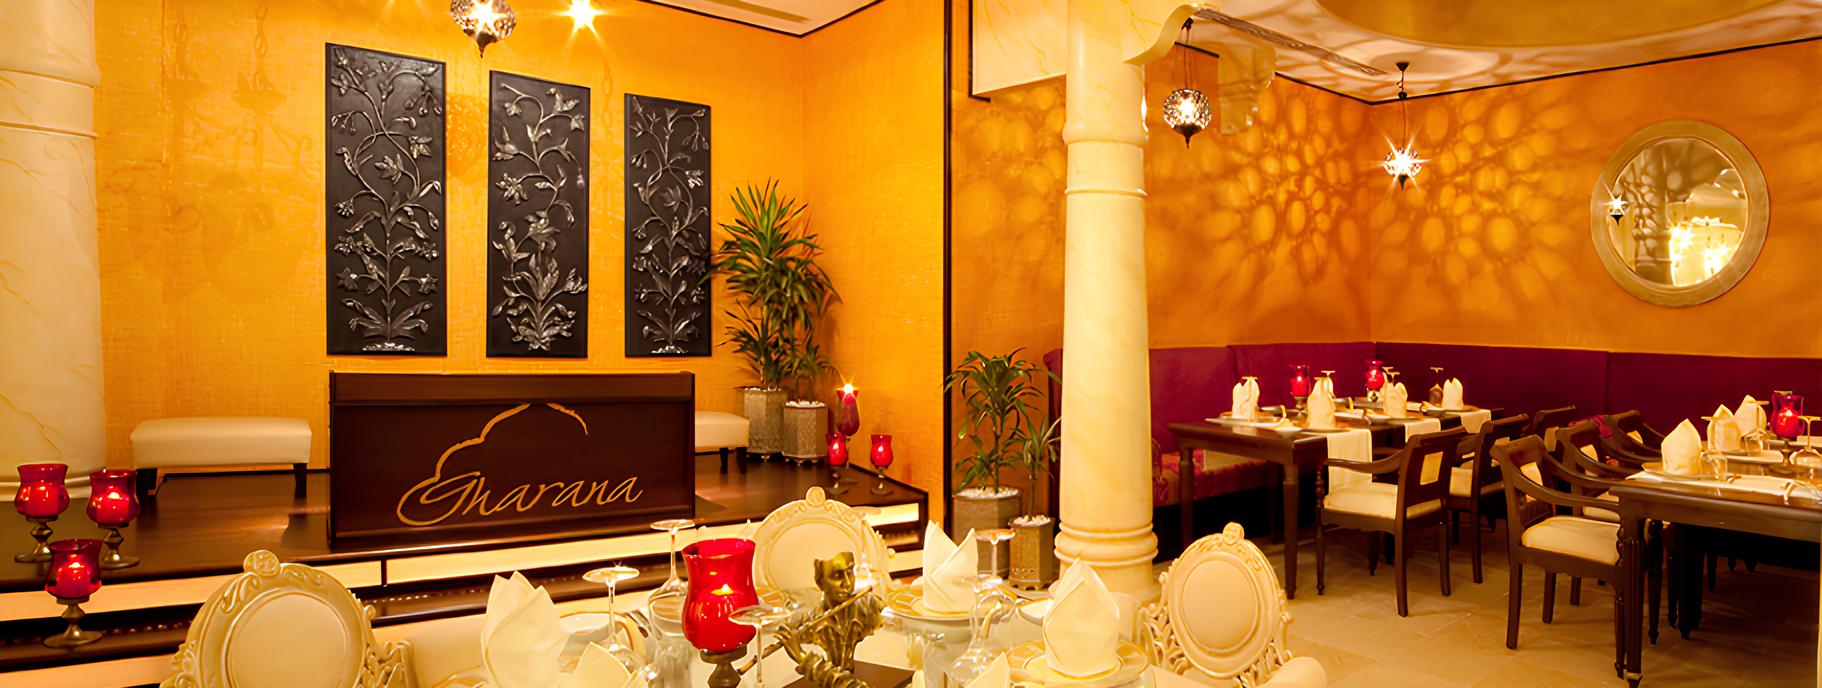 Gharana Restaurant Dubai